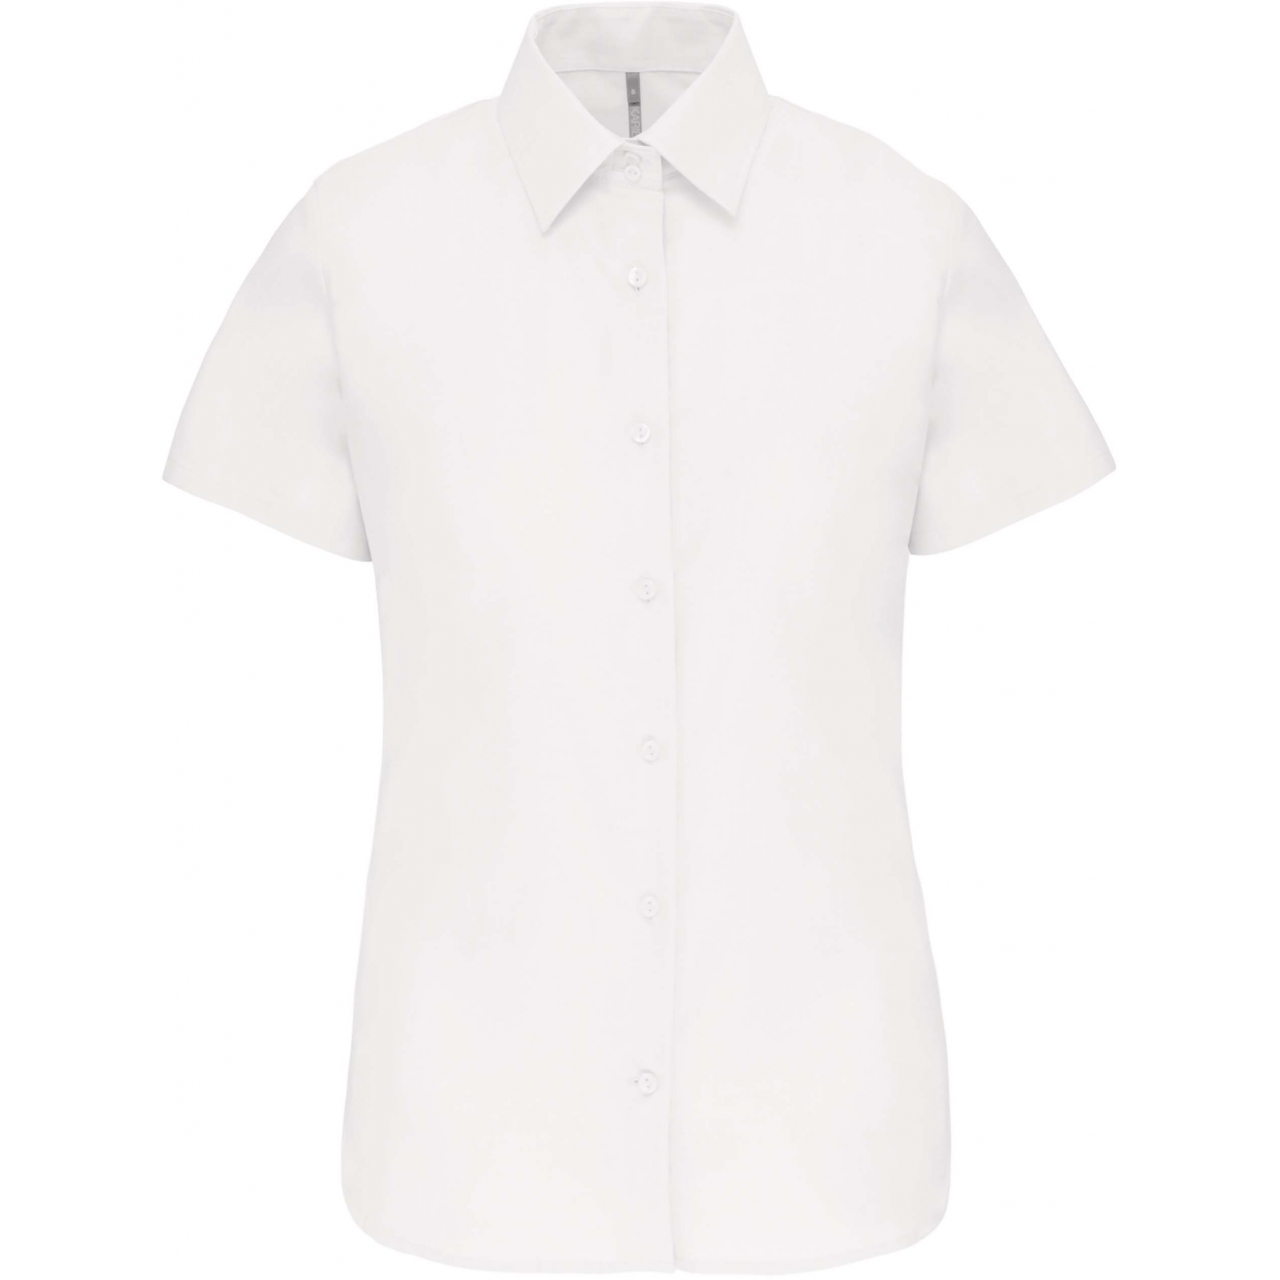 Košile dámská s krátkým rukávem Kariban Oxford - bílá, L